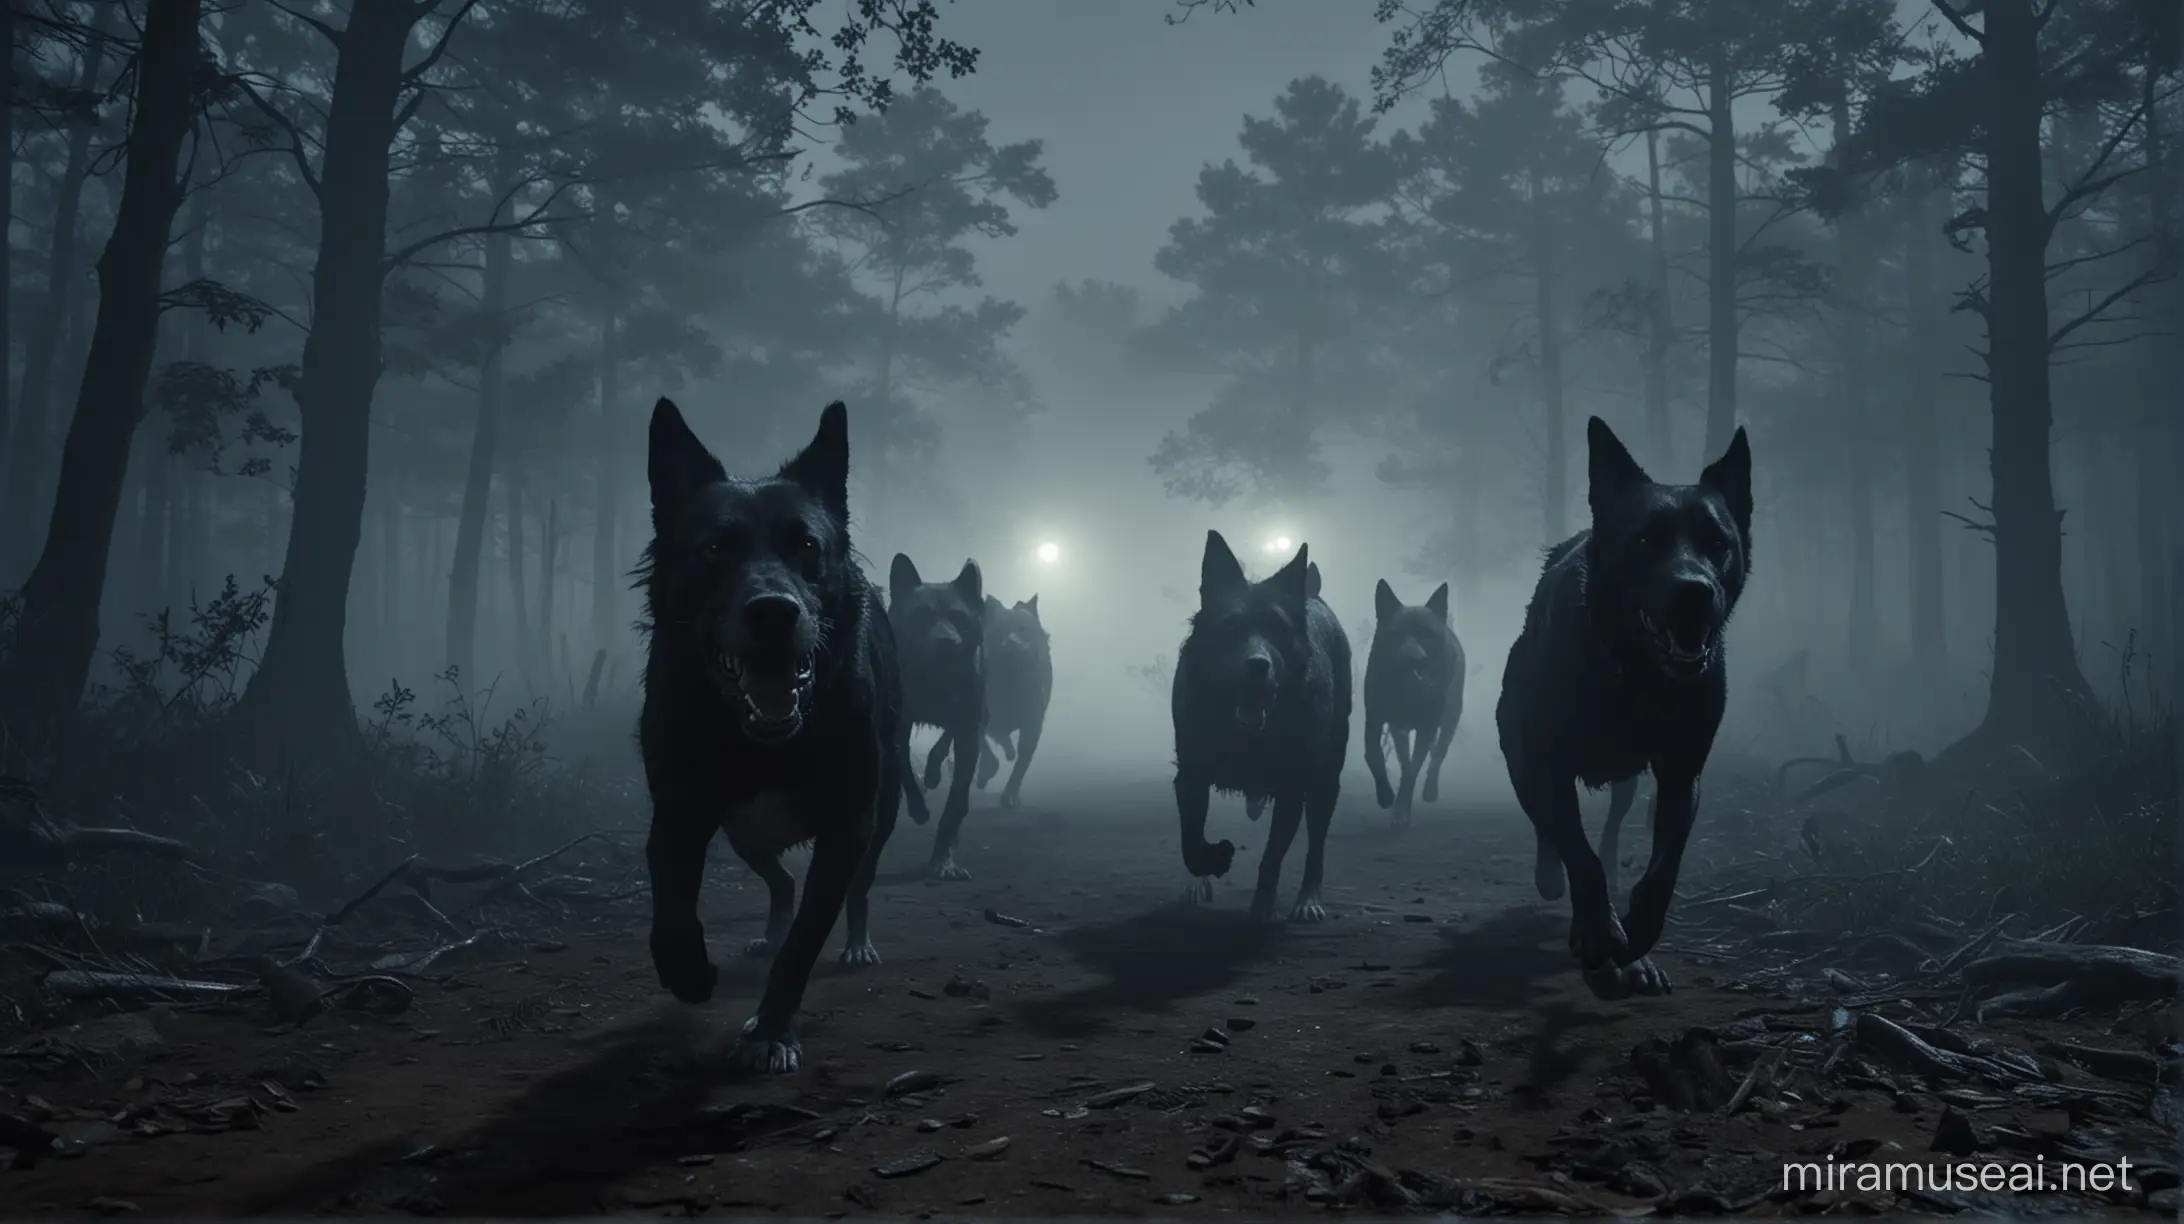 cinematic still, resident evil, demon dogs chasing, forest, night, fog

